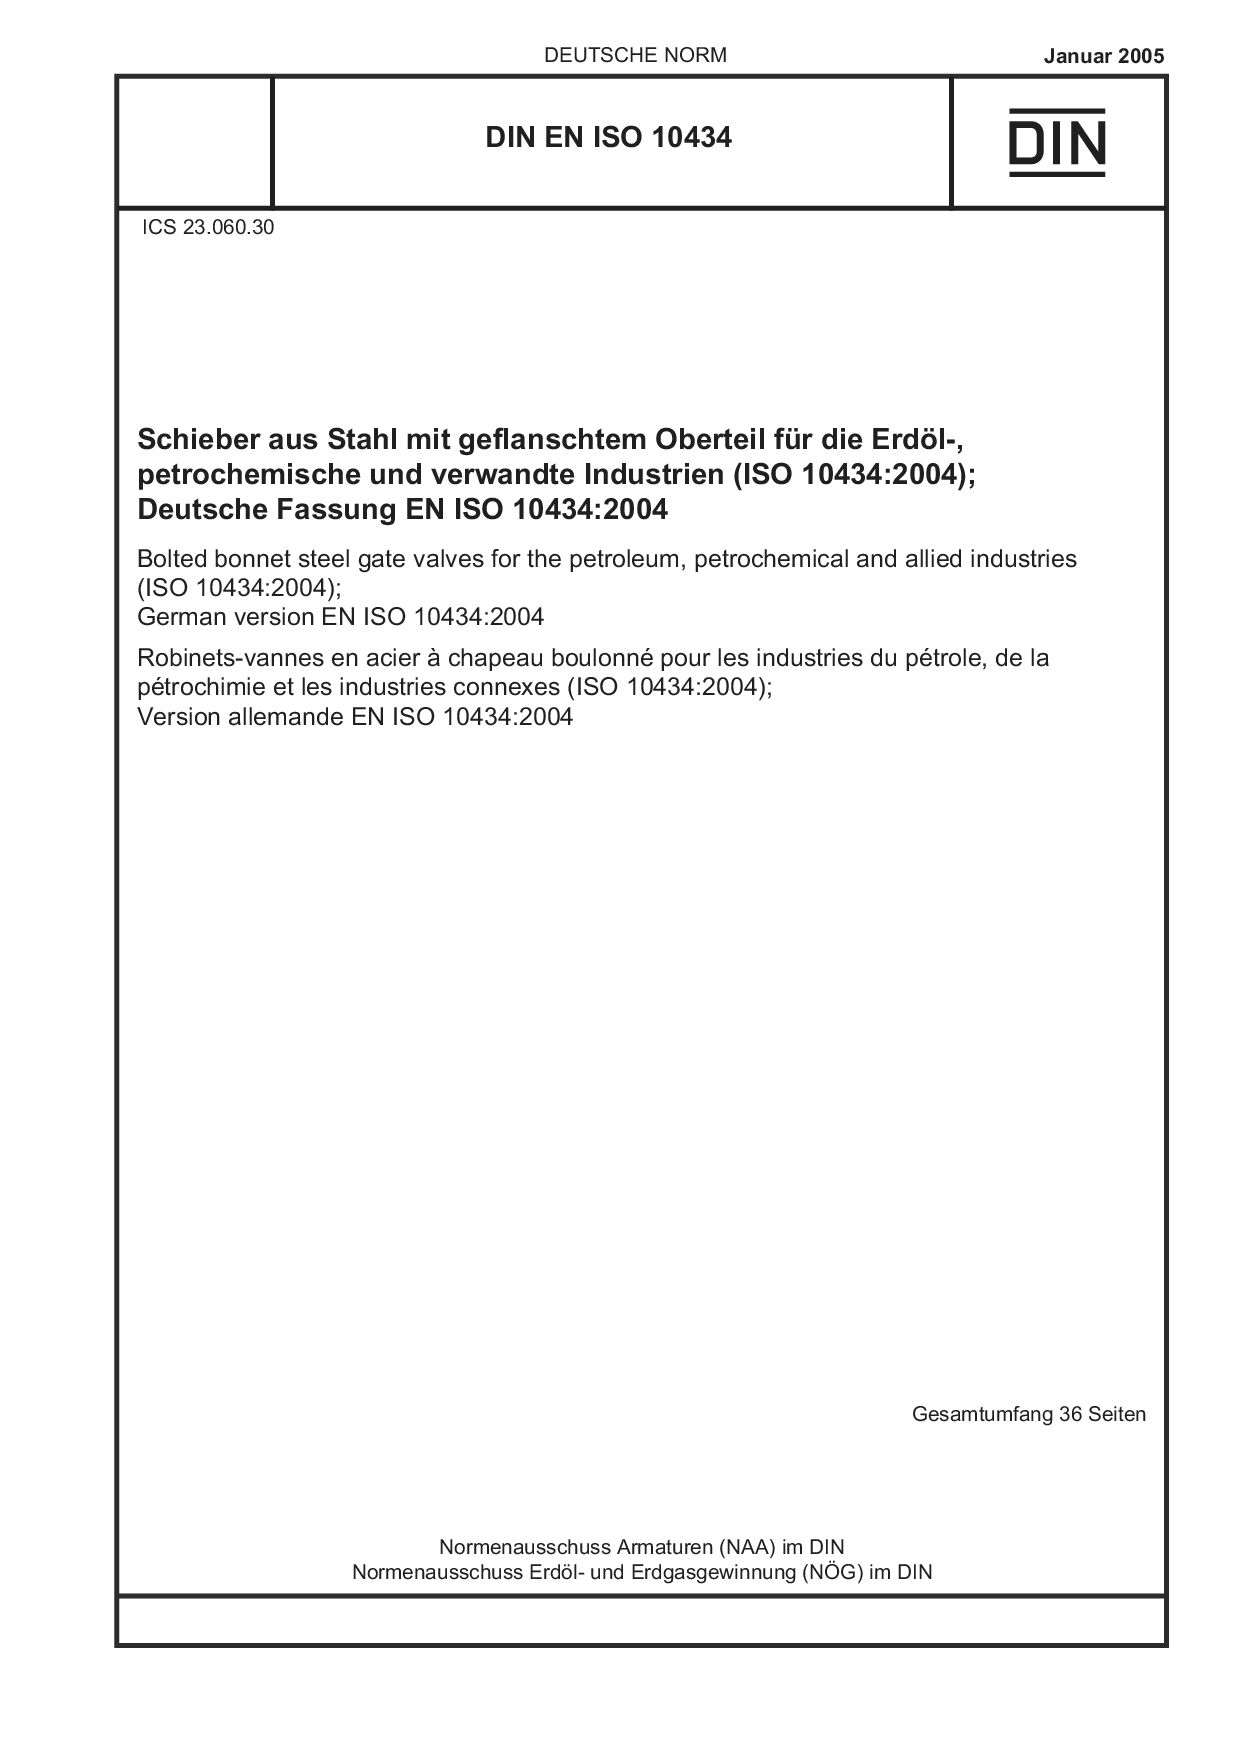 DIN EN ISO 10434:2005封面图